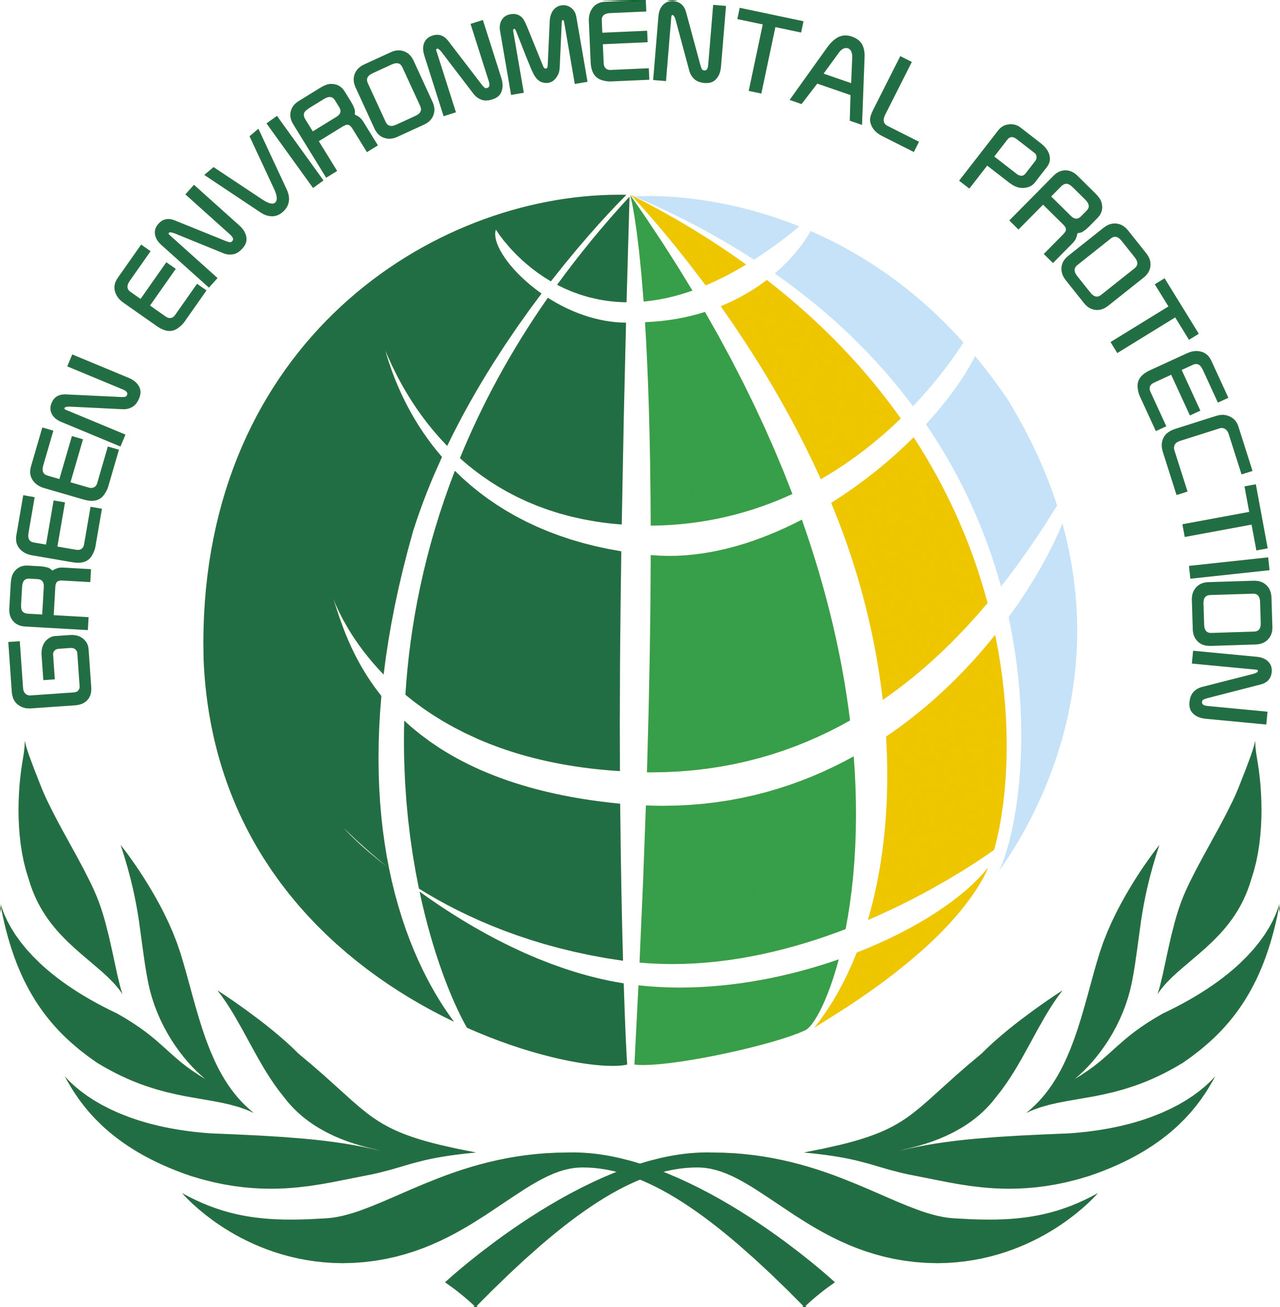 世界綠色環保委員會